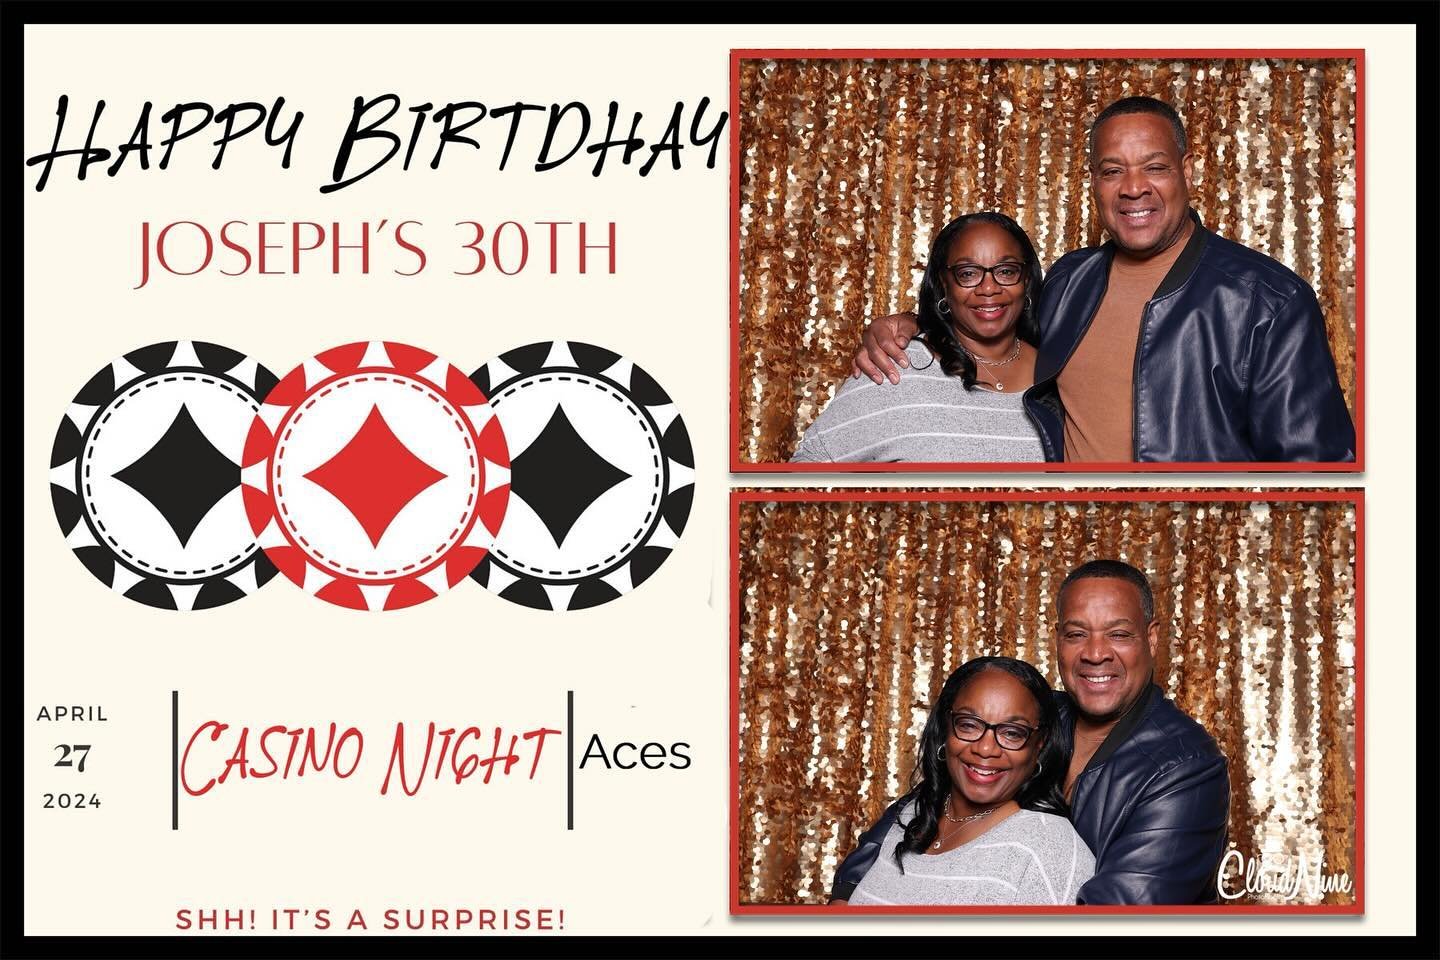 @sherida_tupperware &amp; Marlo celebrating Joseph&rsquo;s casino night #30thbirthday @cloudninephotobooth